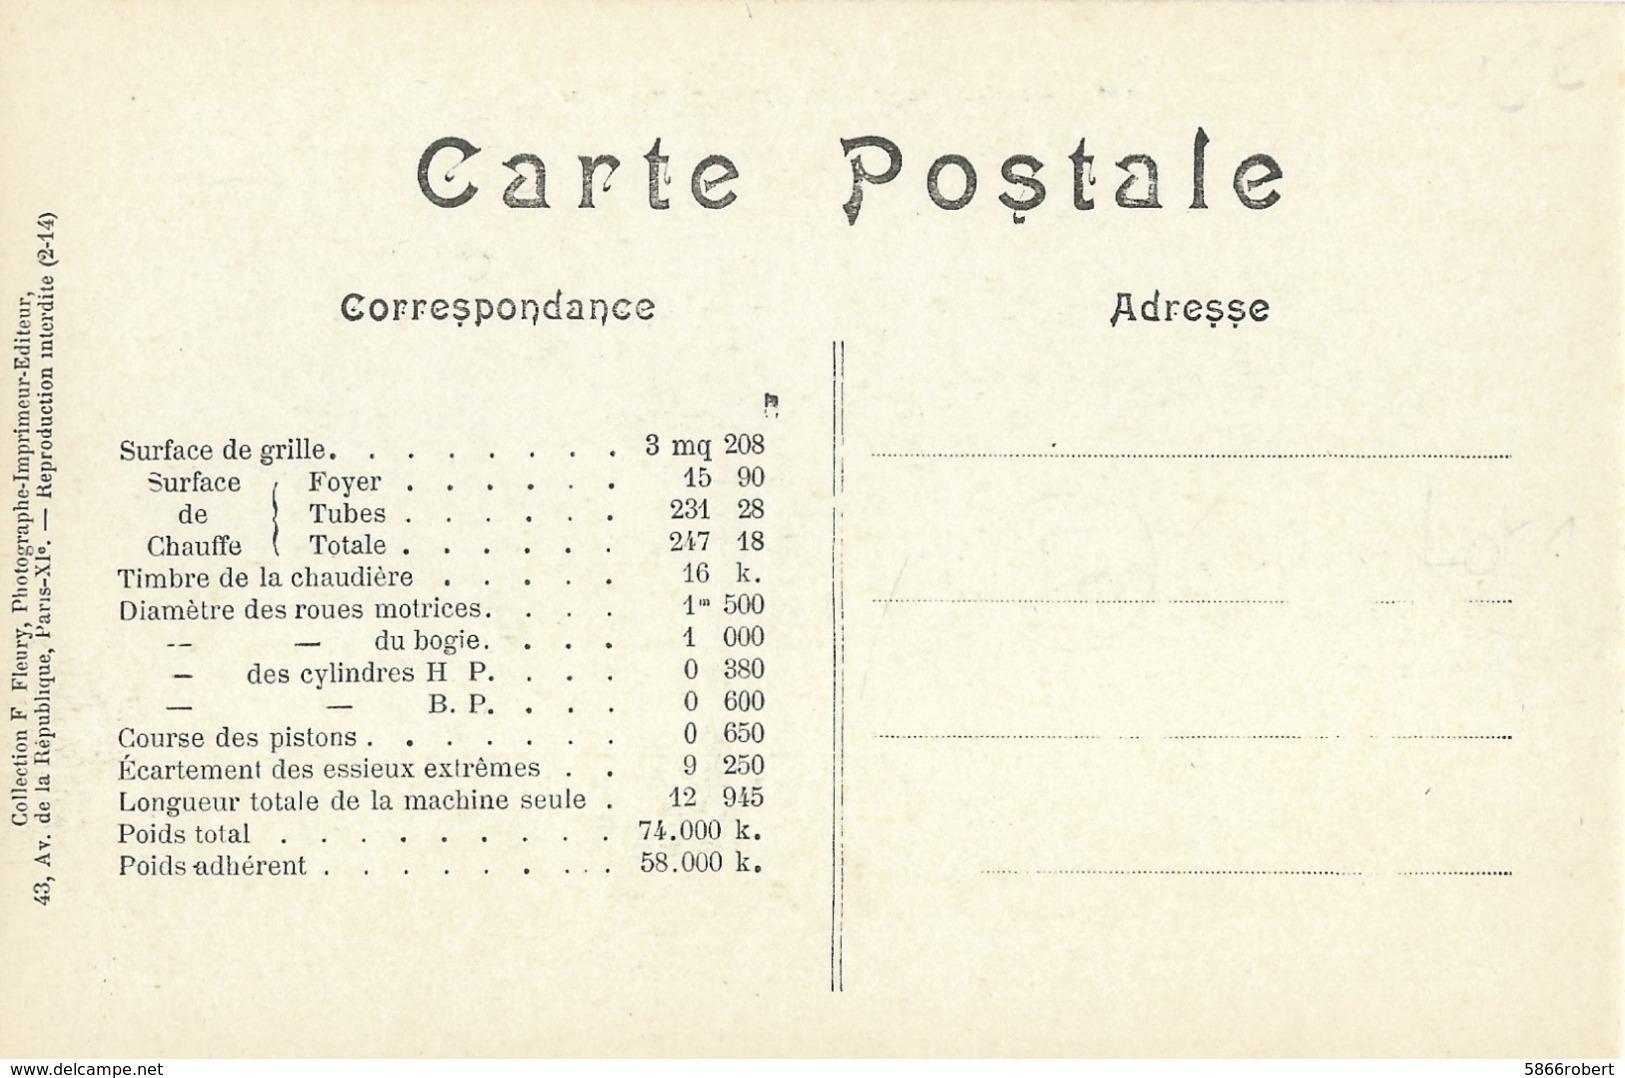 CARTE POSTALE ORIGINALE ANCIENNE : LOCOMOTIVE FRANCAISE A VAPEUR ( P. L. M.) MACHINE N° 4838 DE 1908 A 1909 - Materiale